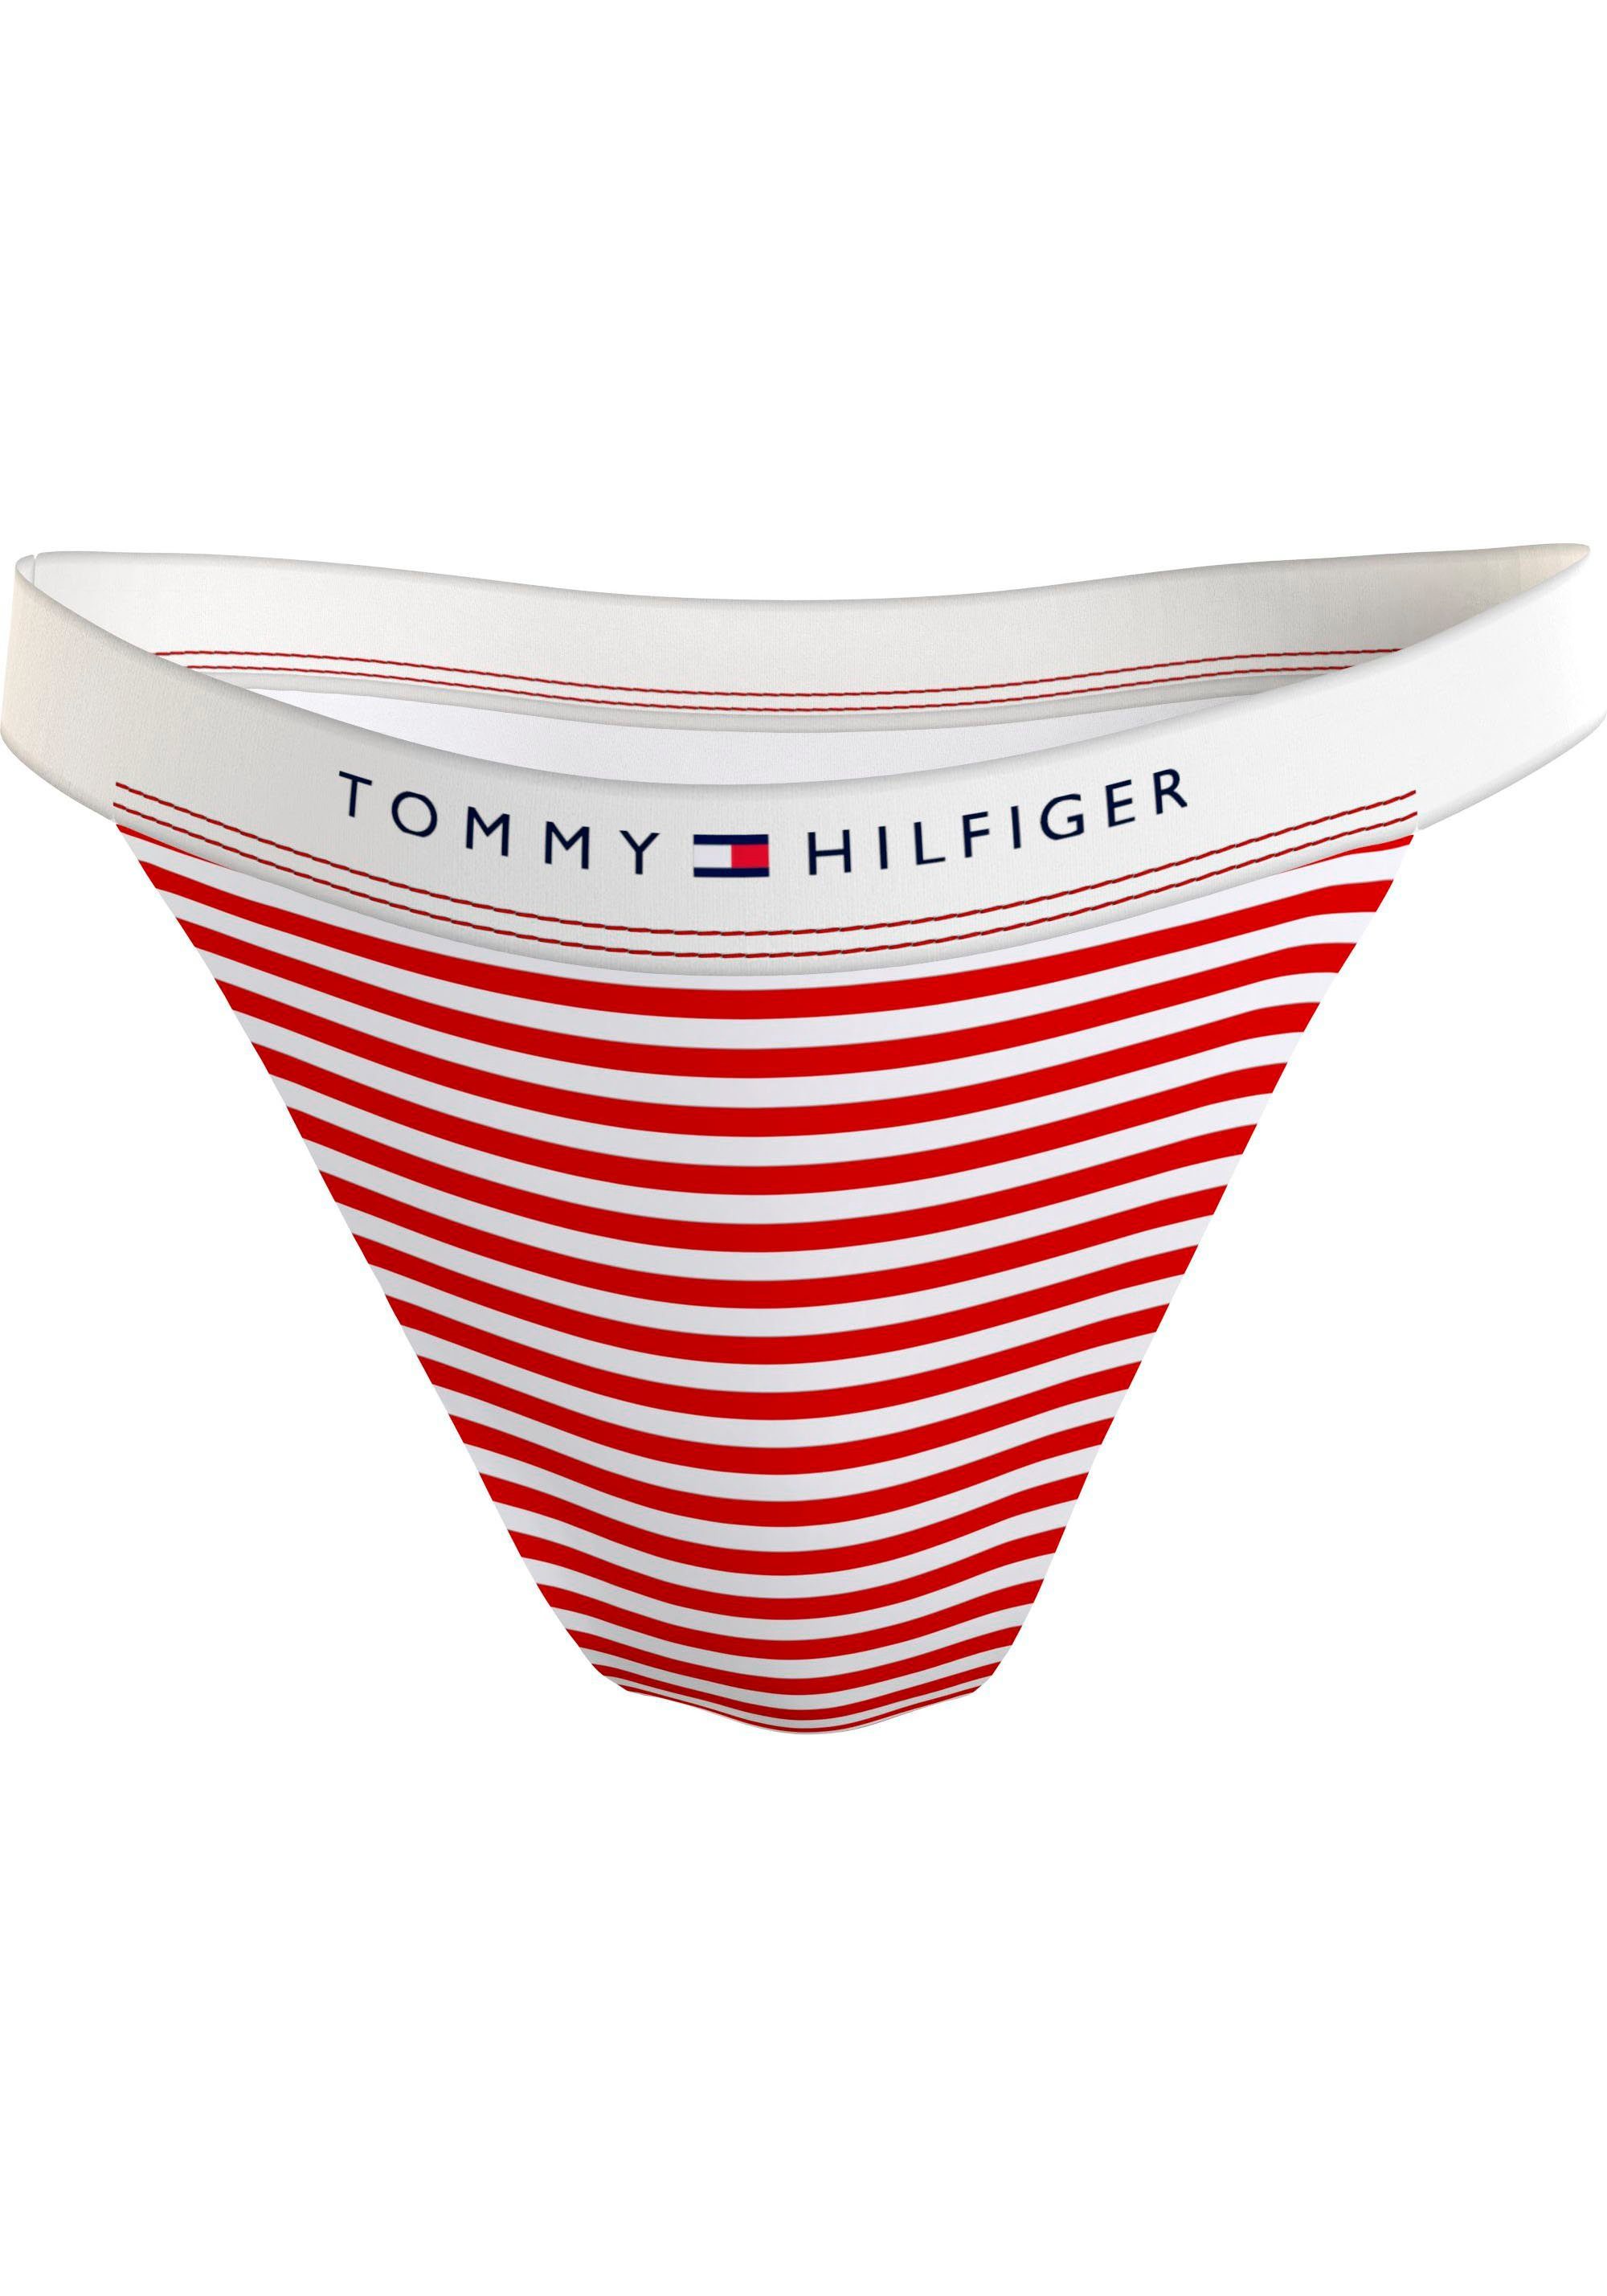 Hilfiger Hilfiger-Branding mit Tommy Tommy WB CHEEKY BIKINI Swimwear TH Bikini-Hose PRINT